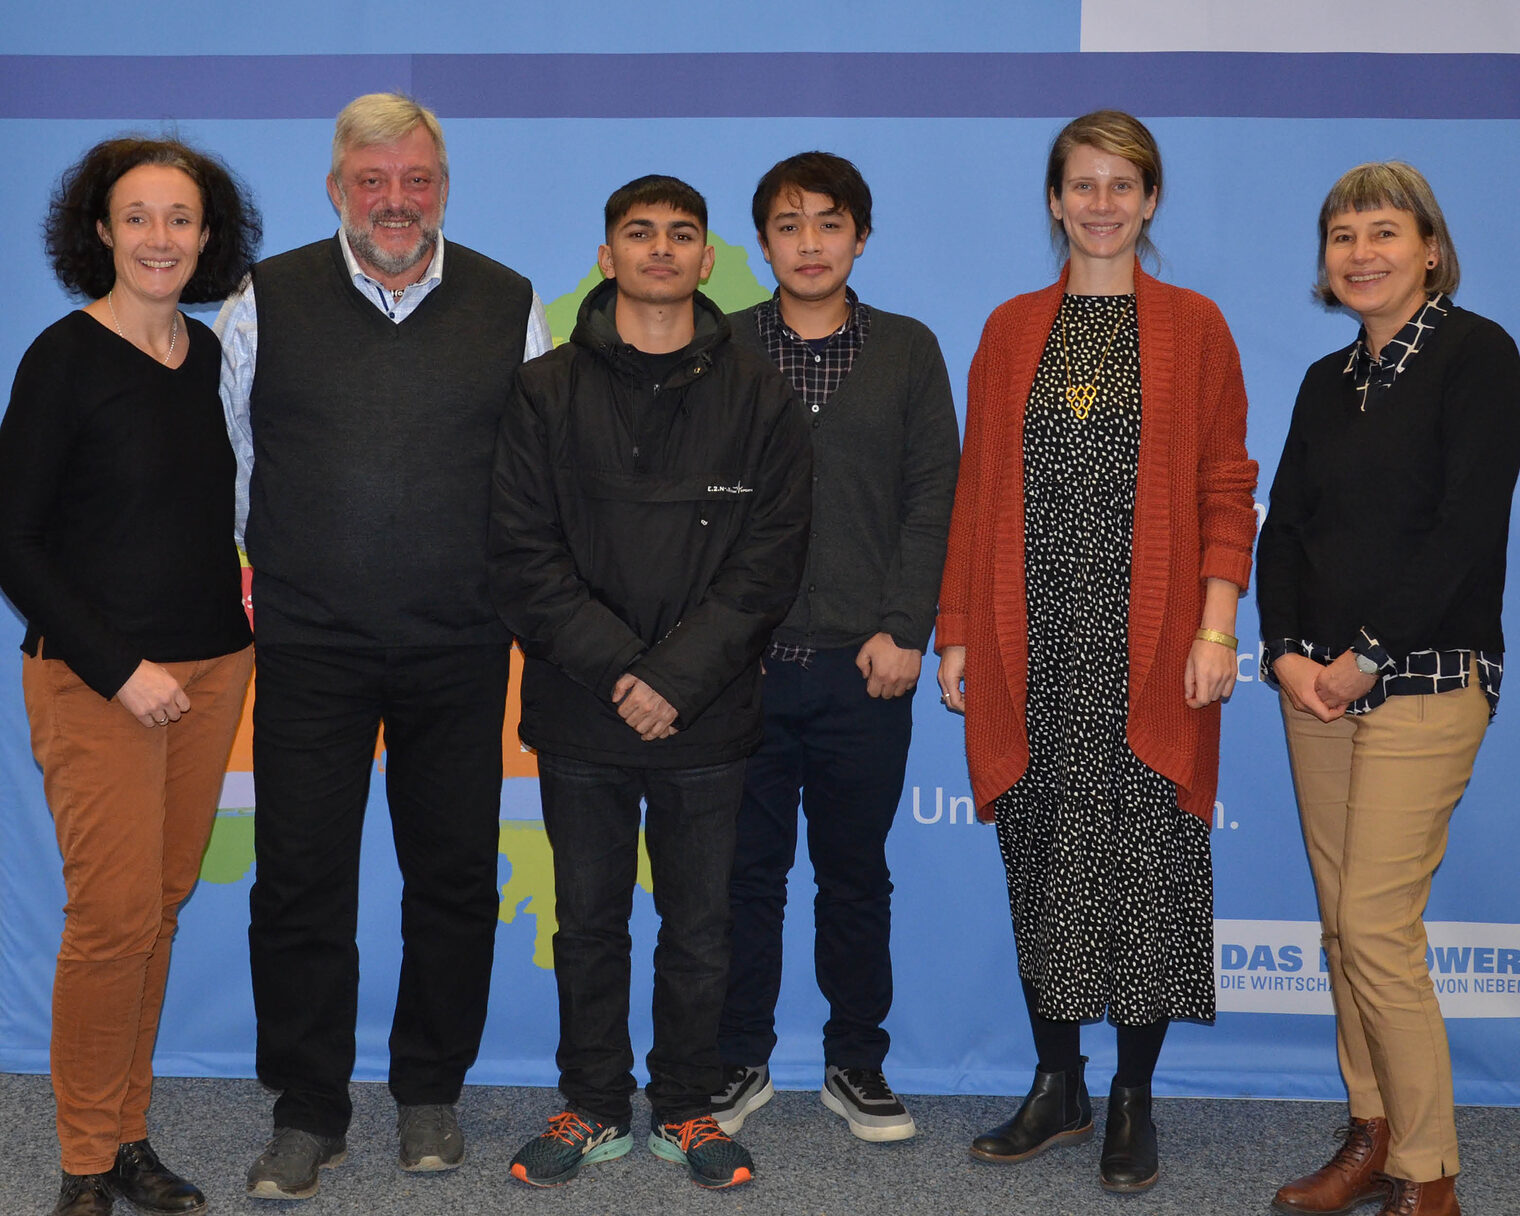 Die beiden nepalesischen Auszubildenden mit Barbara Hoffstadt, Klaus Meyer, Kathrin Junken und Andrea Sitzmann.